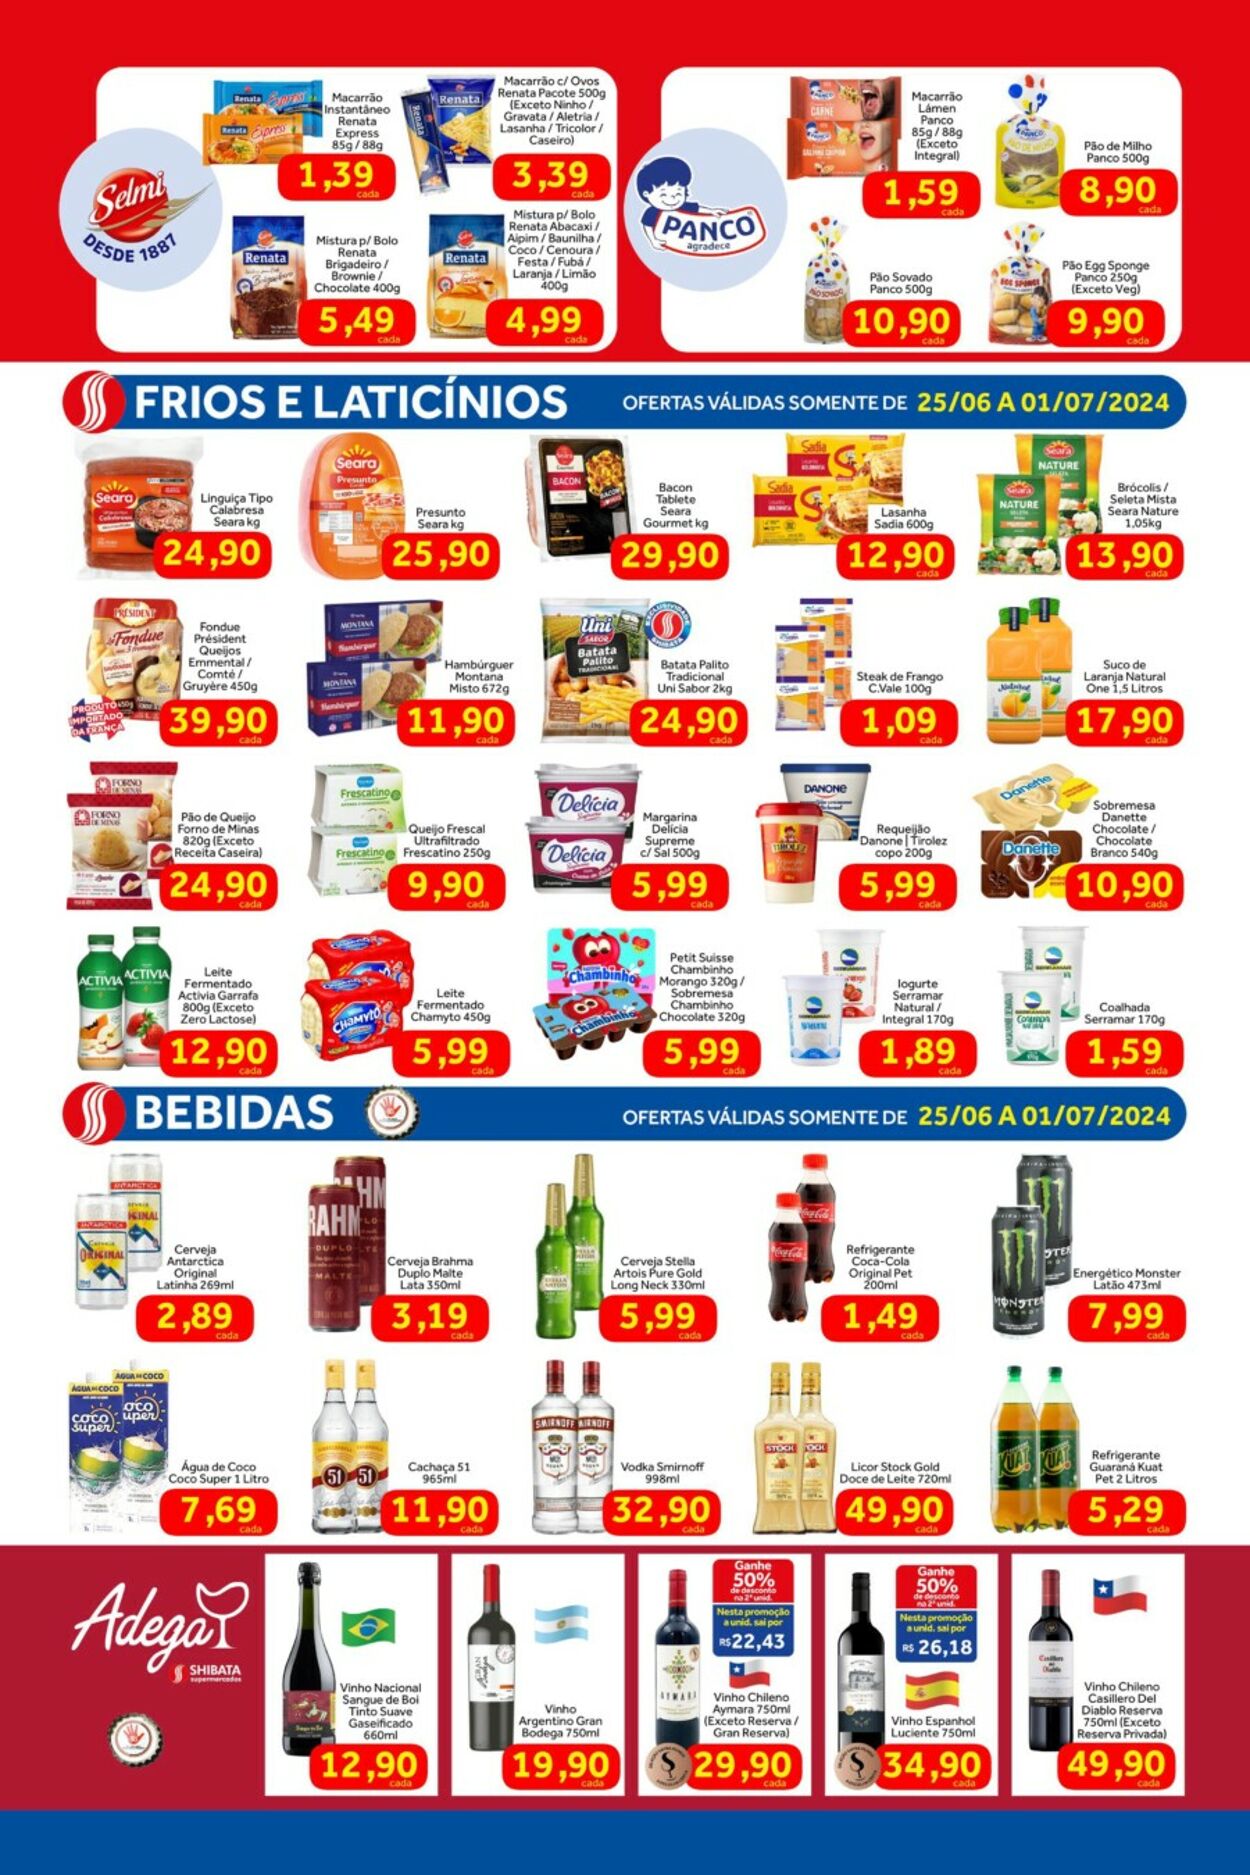 Folheto Shibata Supermercados 06.01.2024 - 07.12.2024